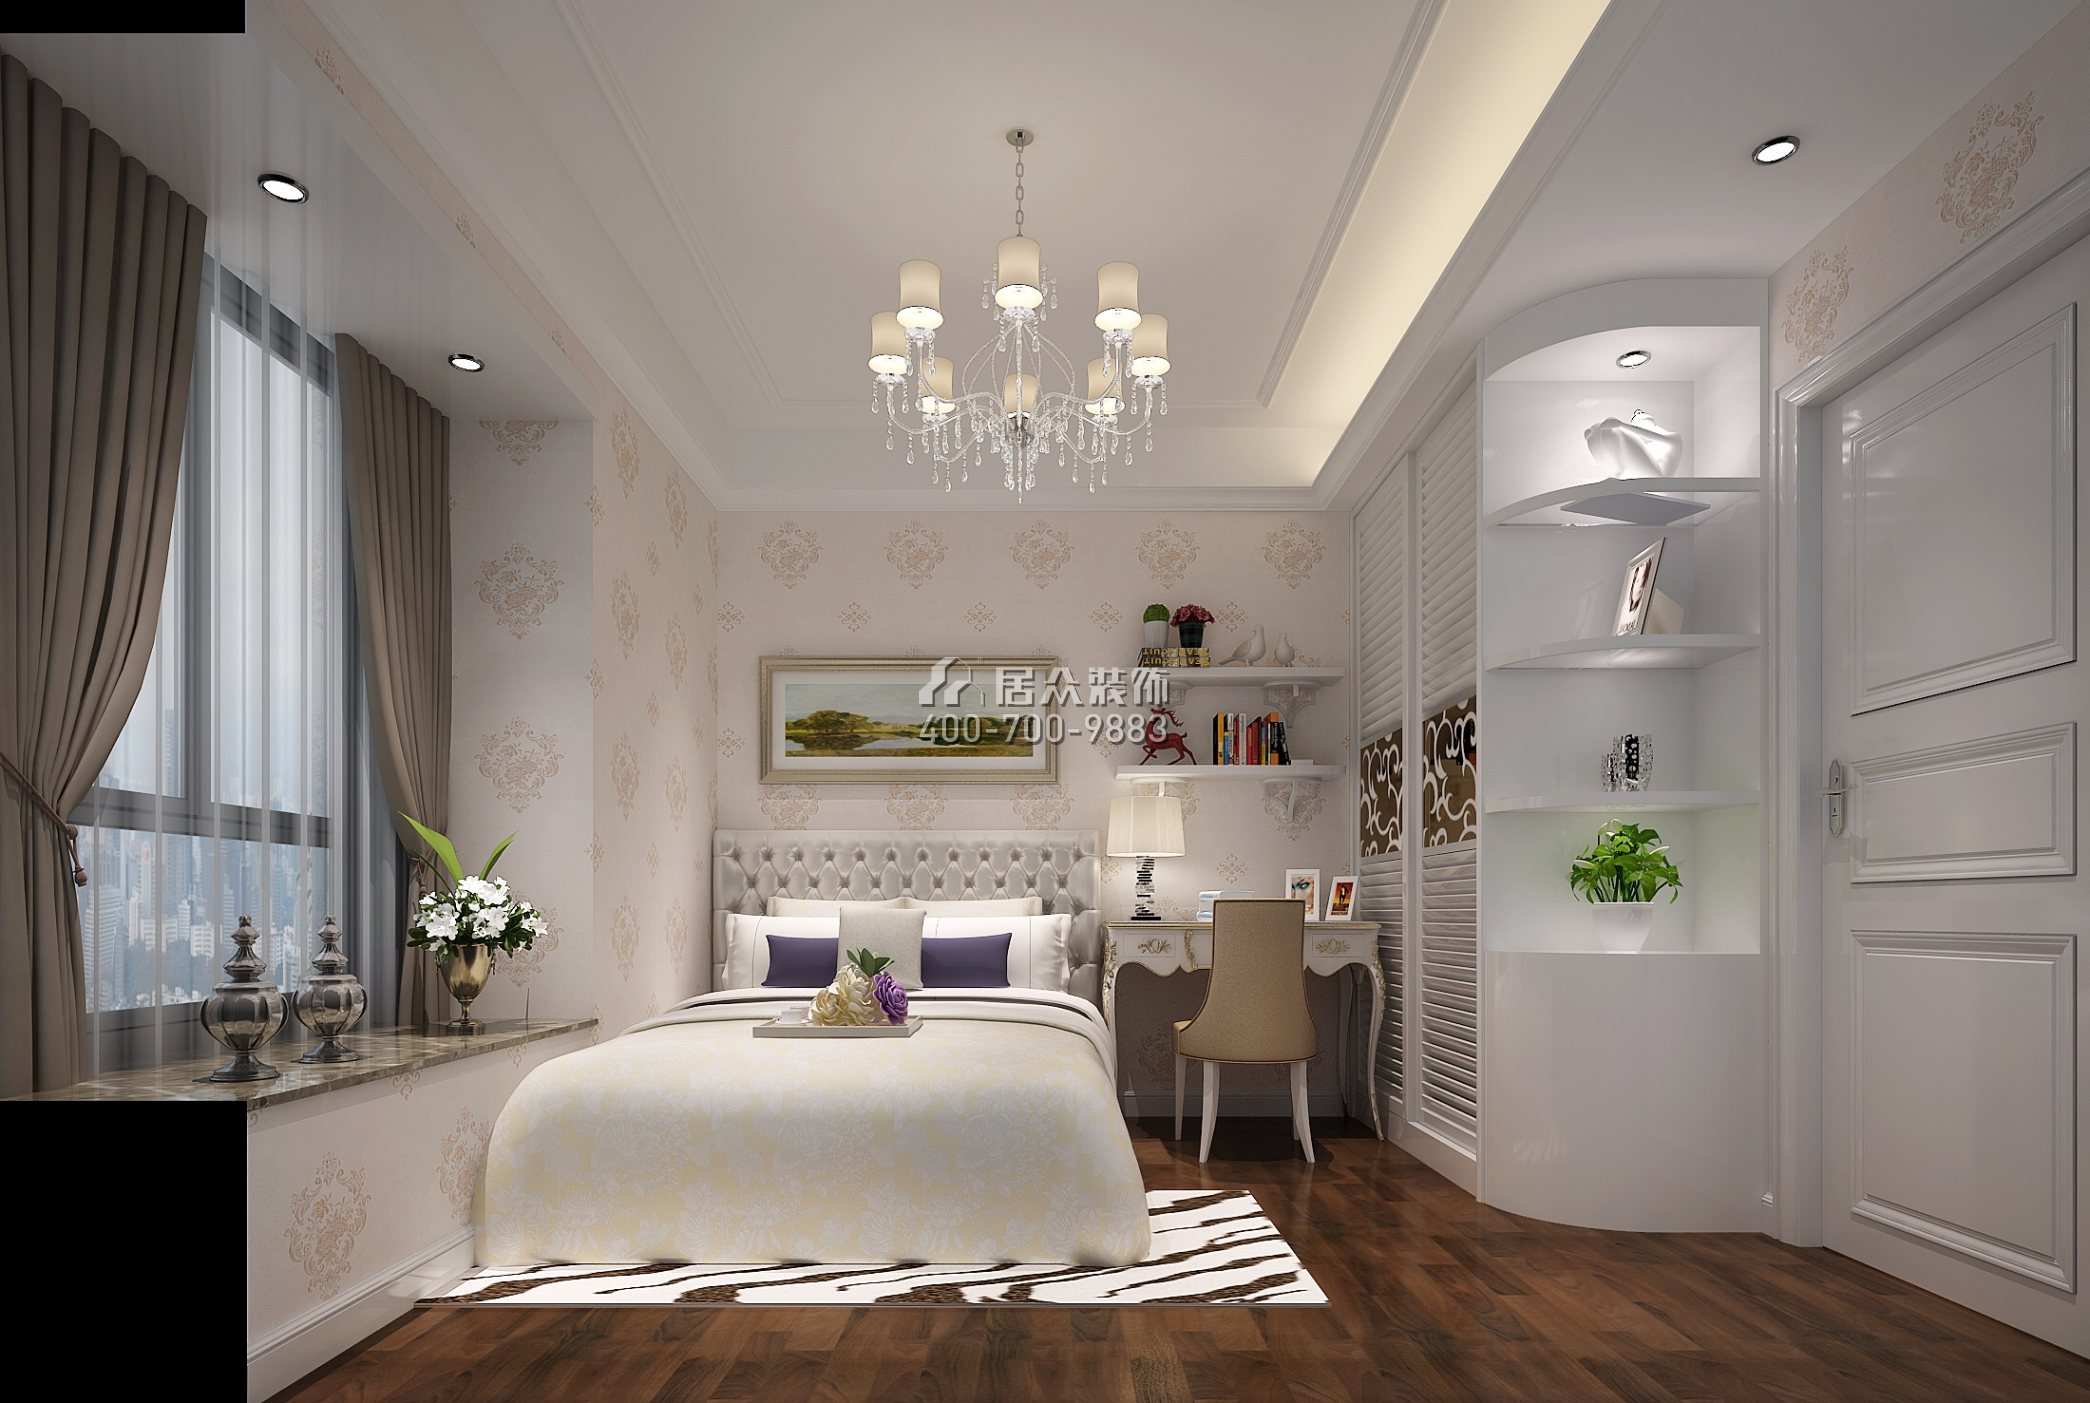 万达文化旅游城150平方米欧式风格平层户型卧室装修效果图